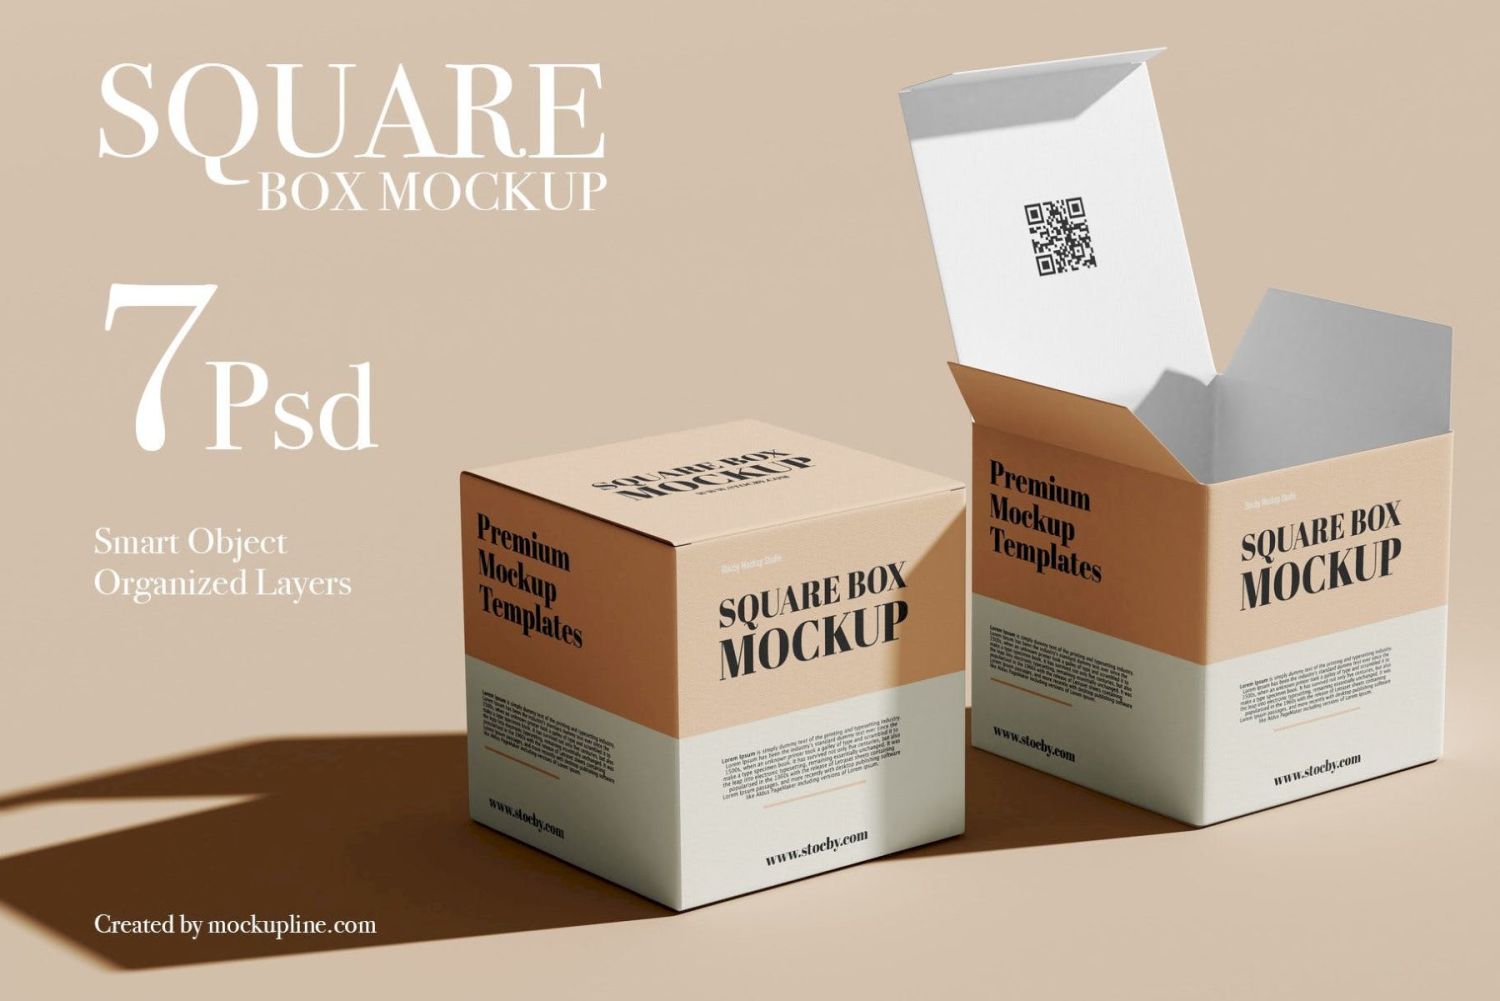 方盒样机集 Square Box Mockup Set插图